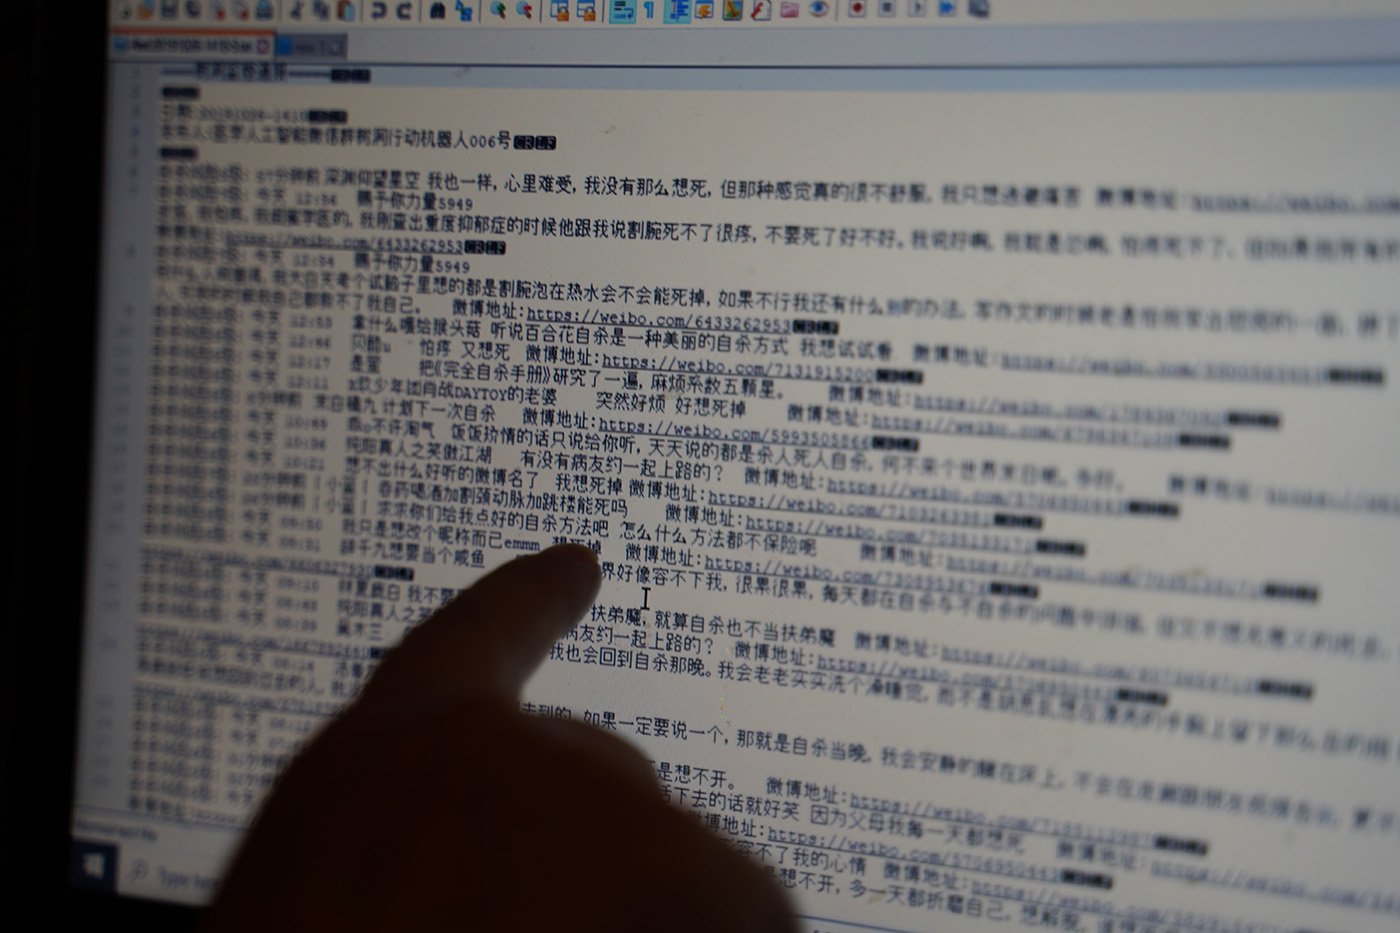 黃智生的程序可以自動檢索微博平台的關鍵詞，進行分級後生成自殺警報。